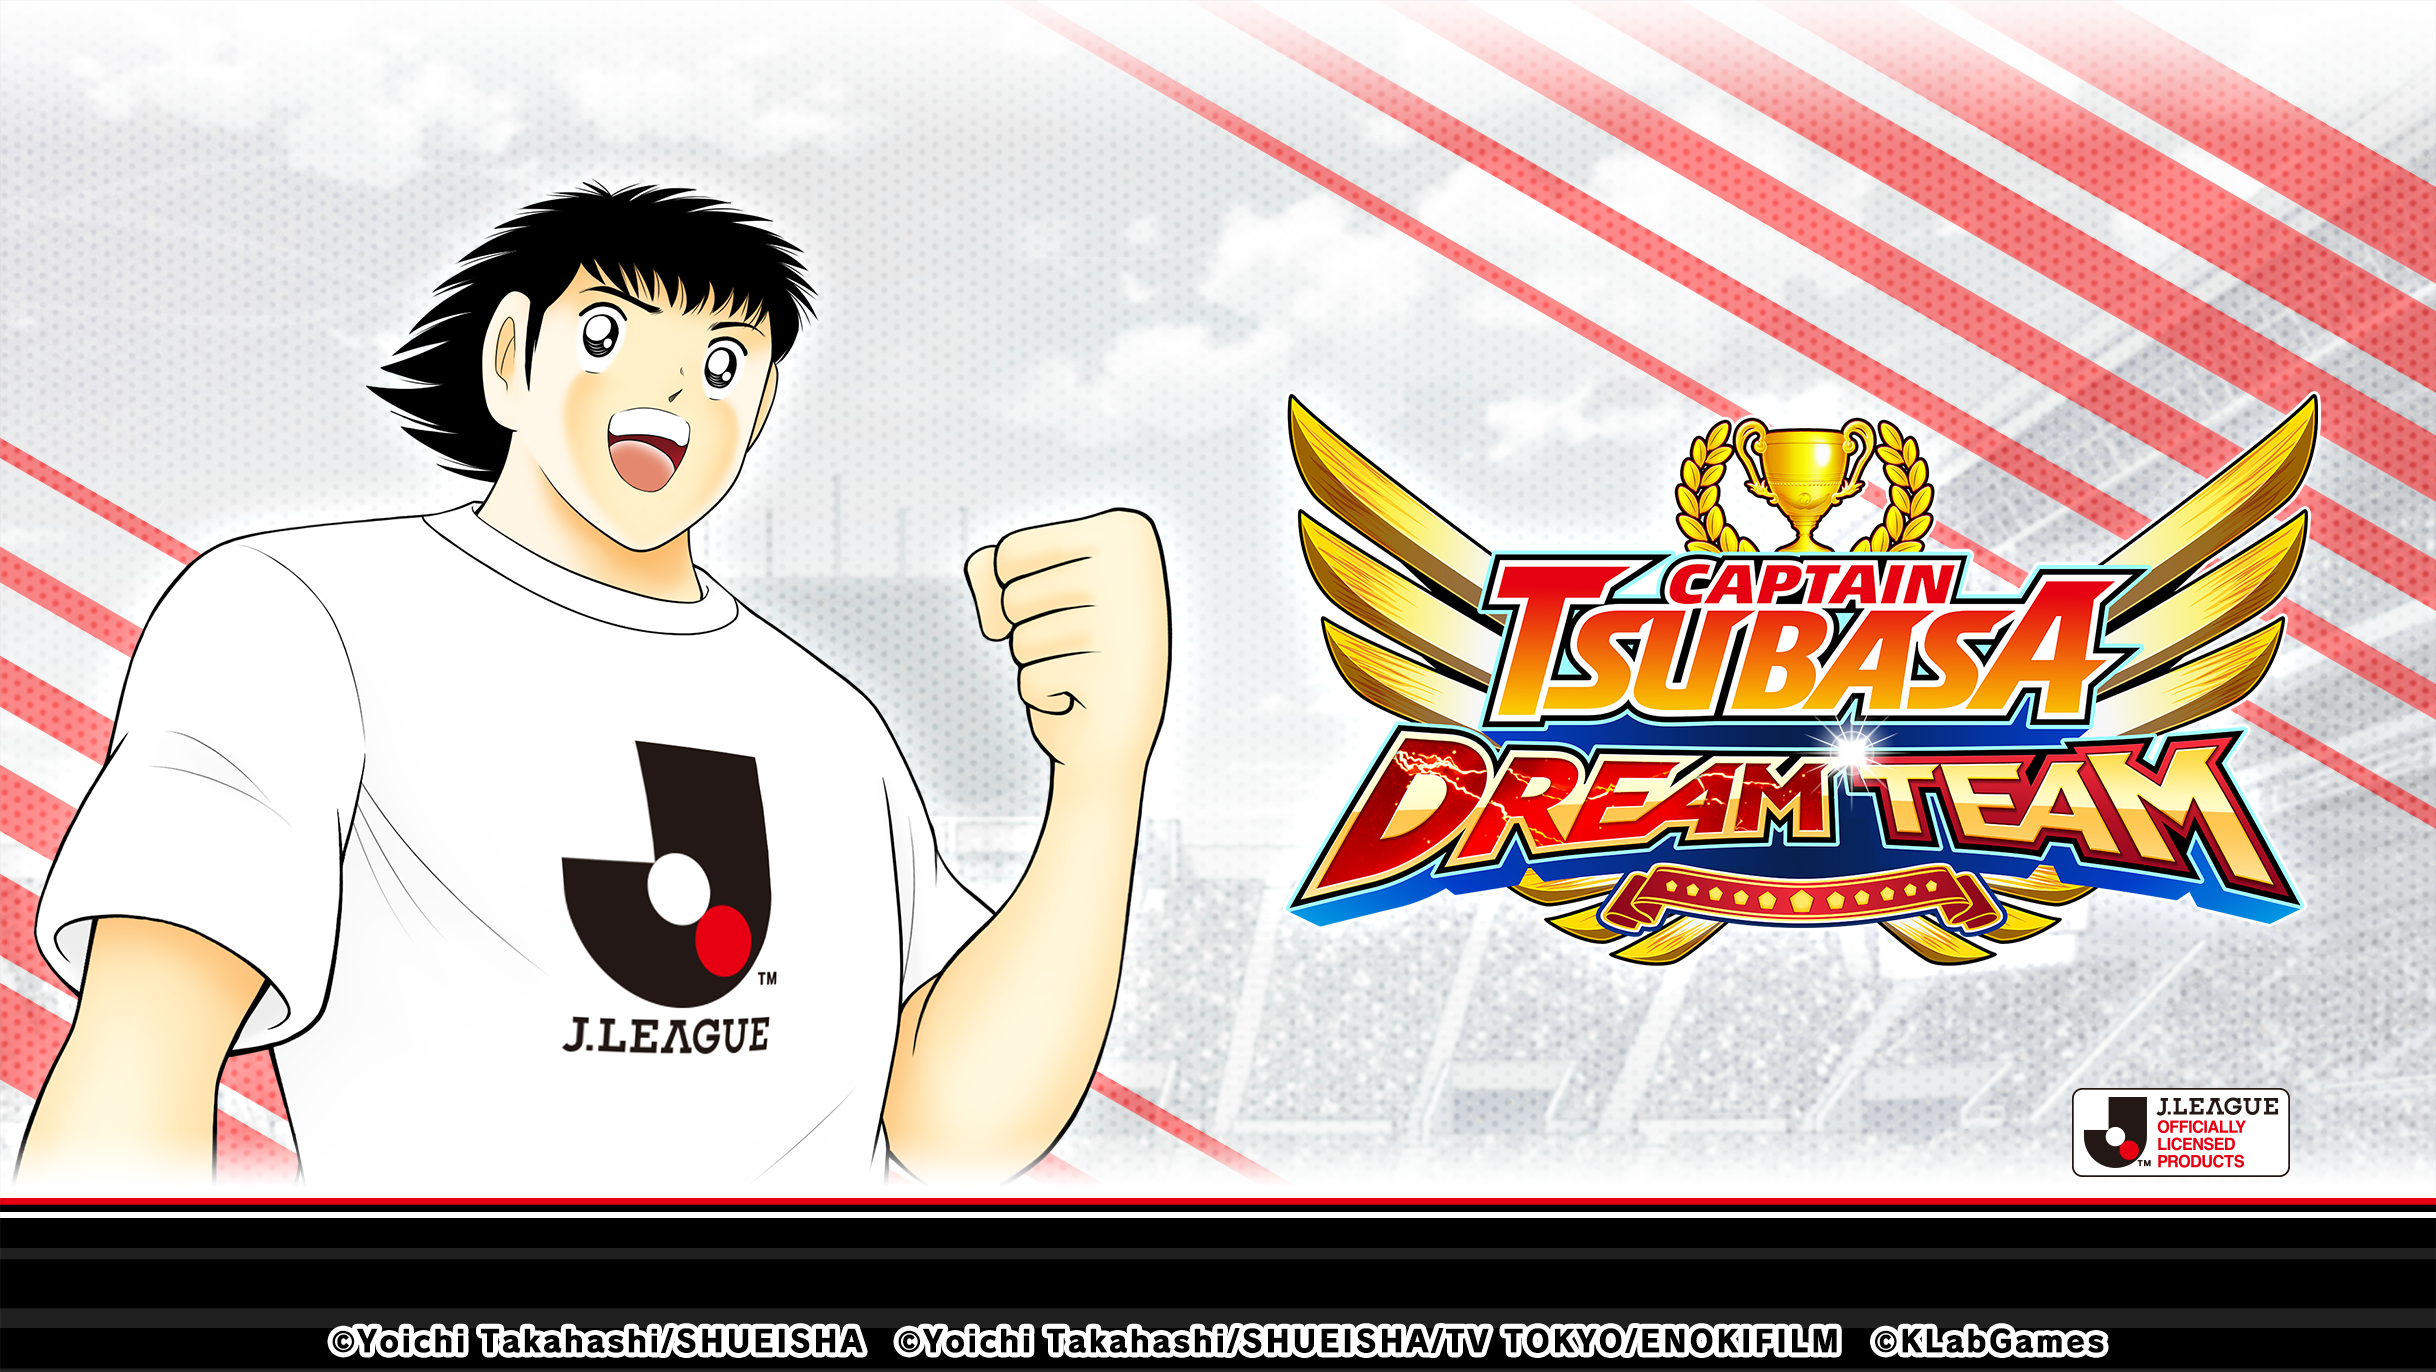 เกม "กัปตันซึบาสะ: ดรีมทีม (Captain Tsubasa: Dream Team)" เปิดตัวตัวละครผู้เล่นใหม่ มิซากิ ทาโร่ ในชุดยูนิฟอร์มทางการ J.League 2022!